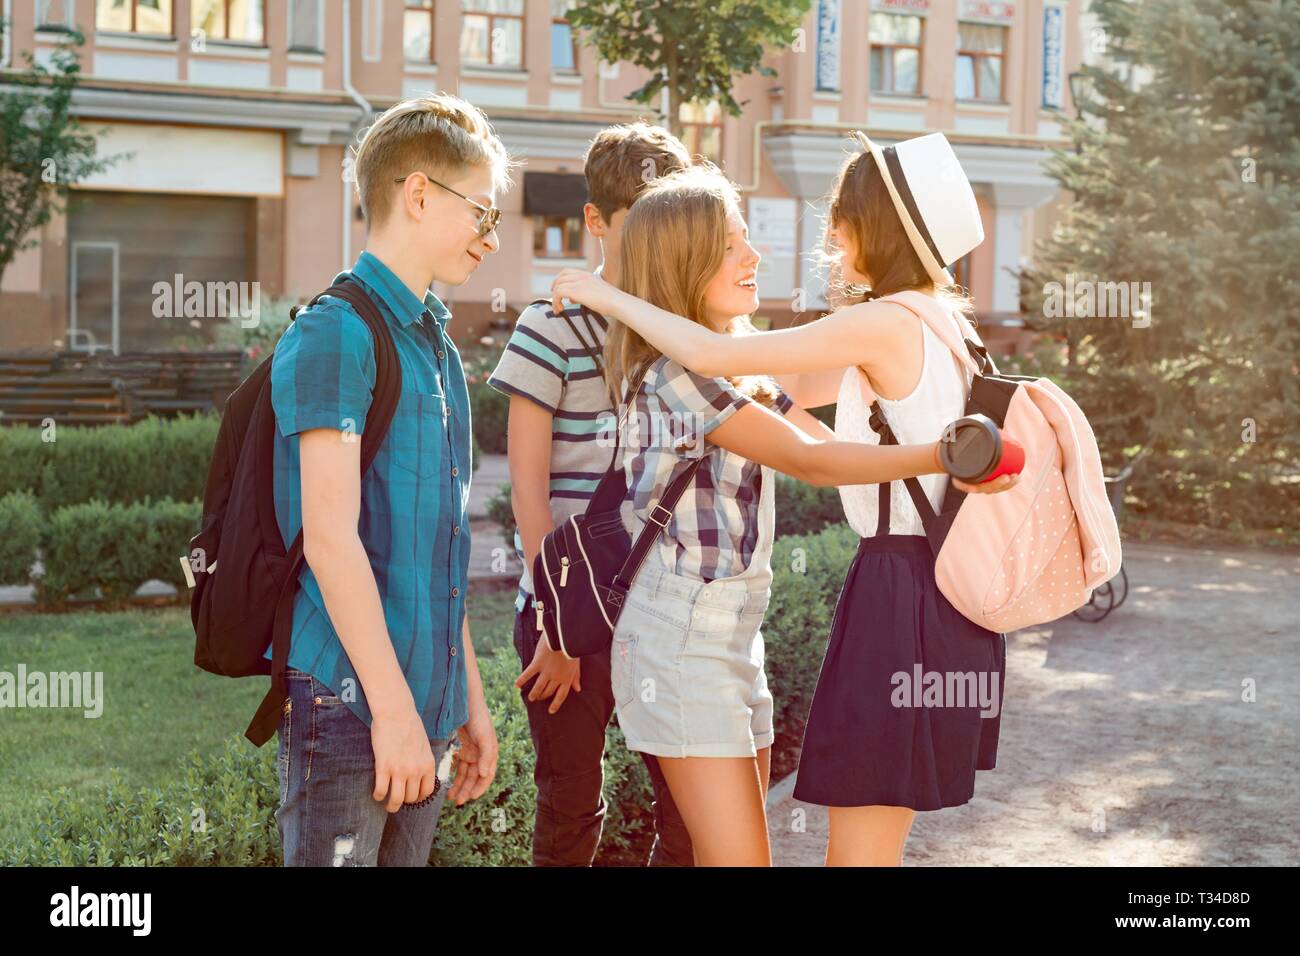 Lächelnd Freunde treffen Jugendliche in der Stadt, glückliche junge Leute Begrüßung, umarmen, fünf. Freundschaft und Personen Konzept. Stockfoto